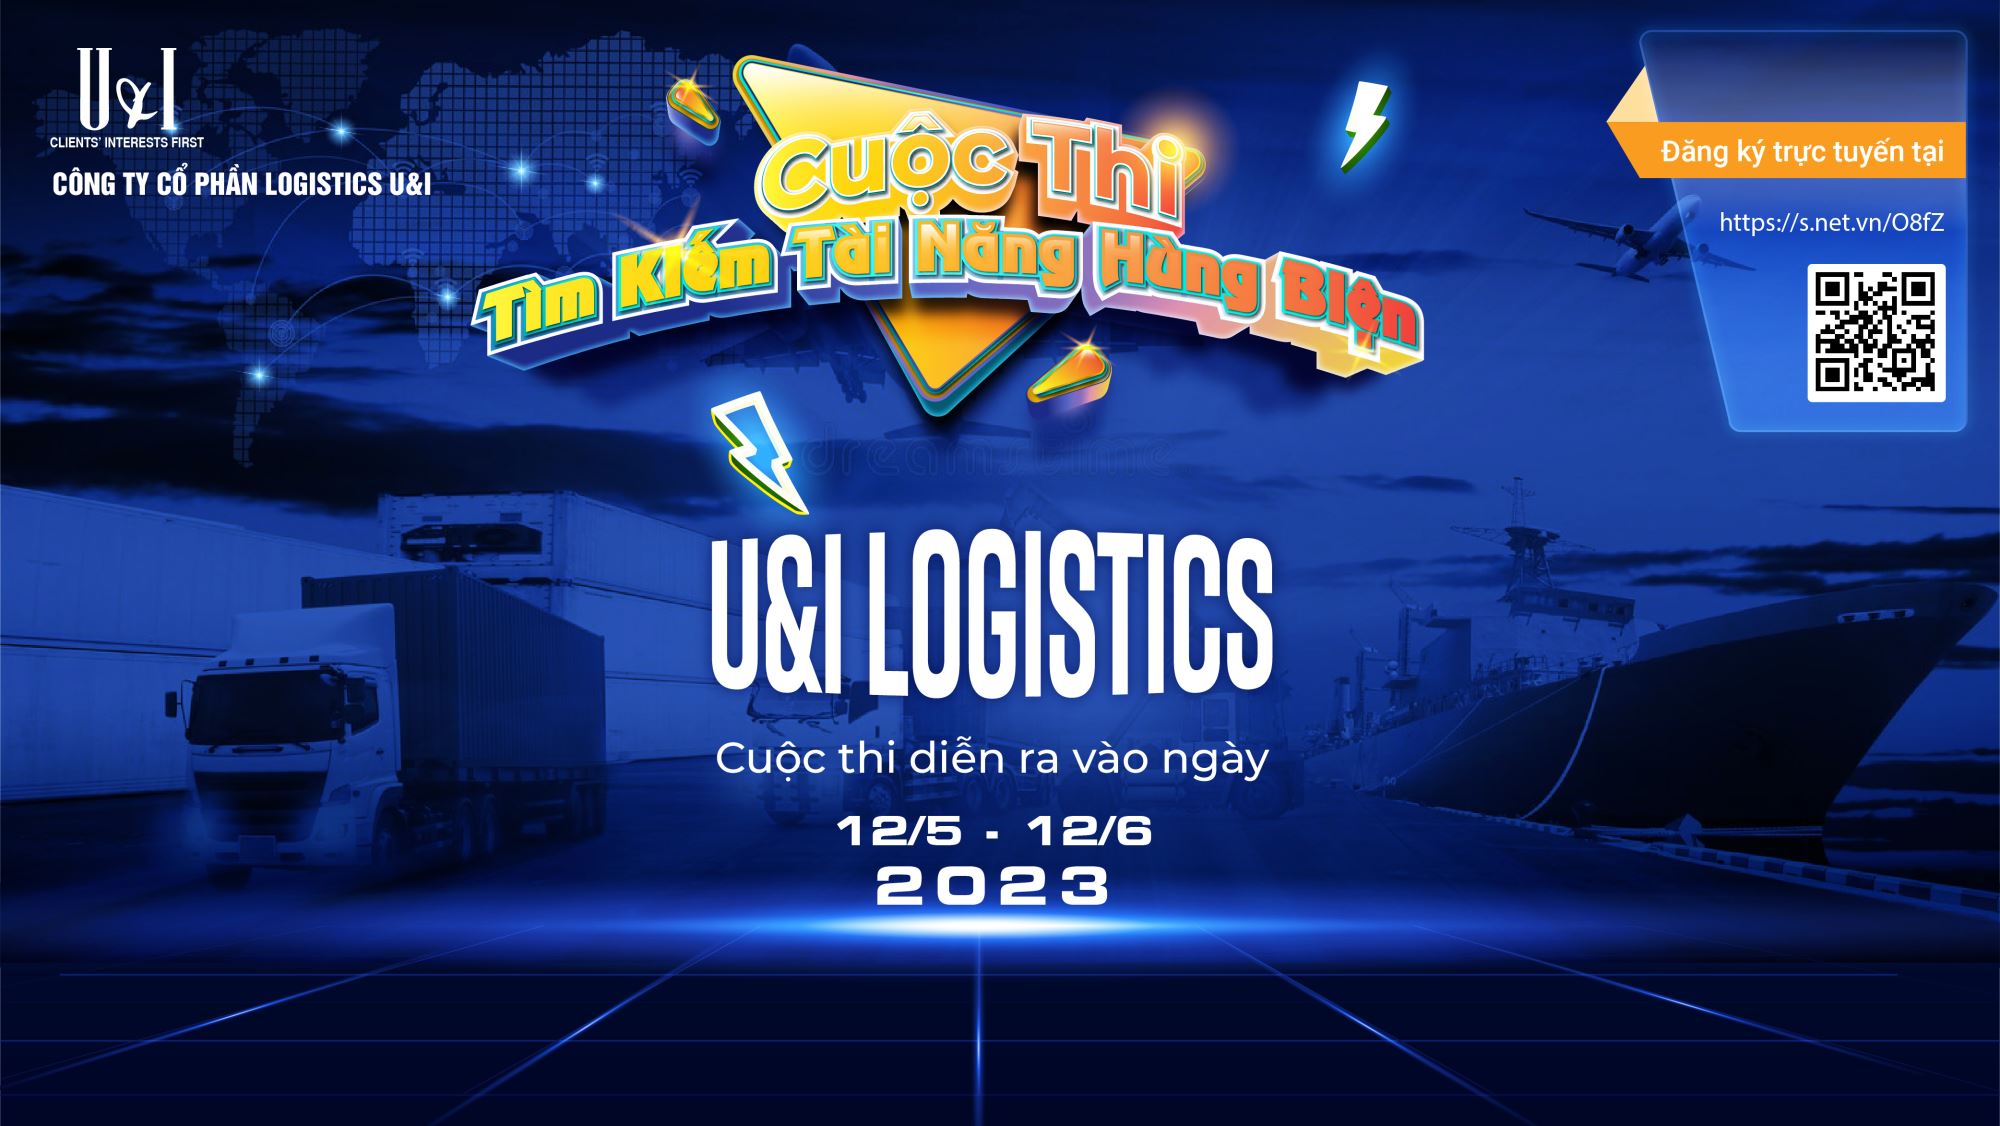 U&I Logistics Speaking Talent Contest 2023